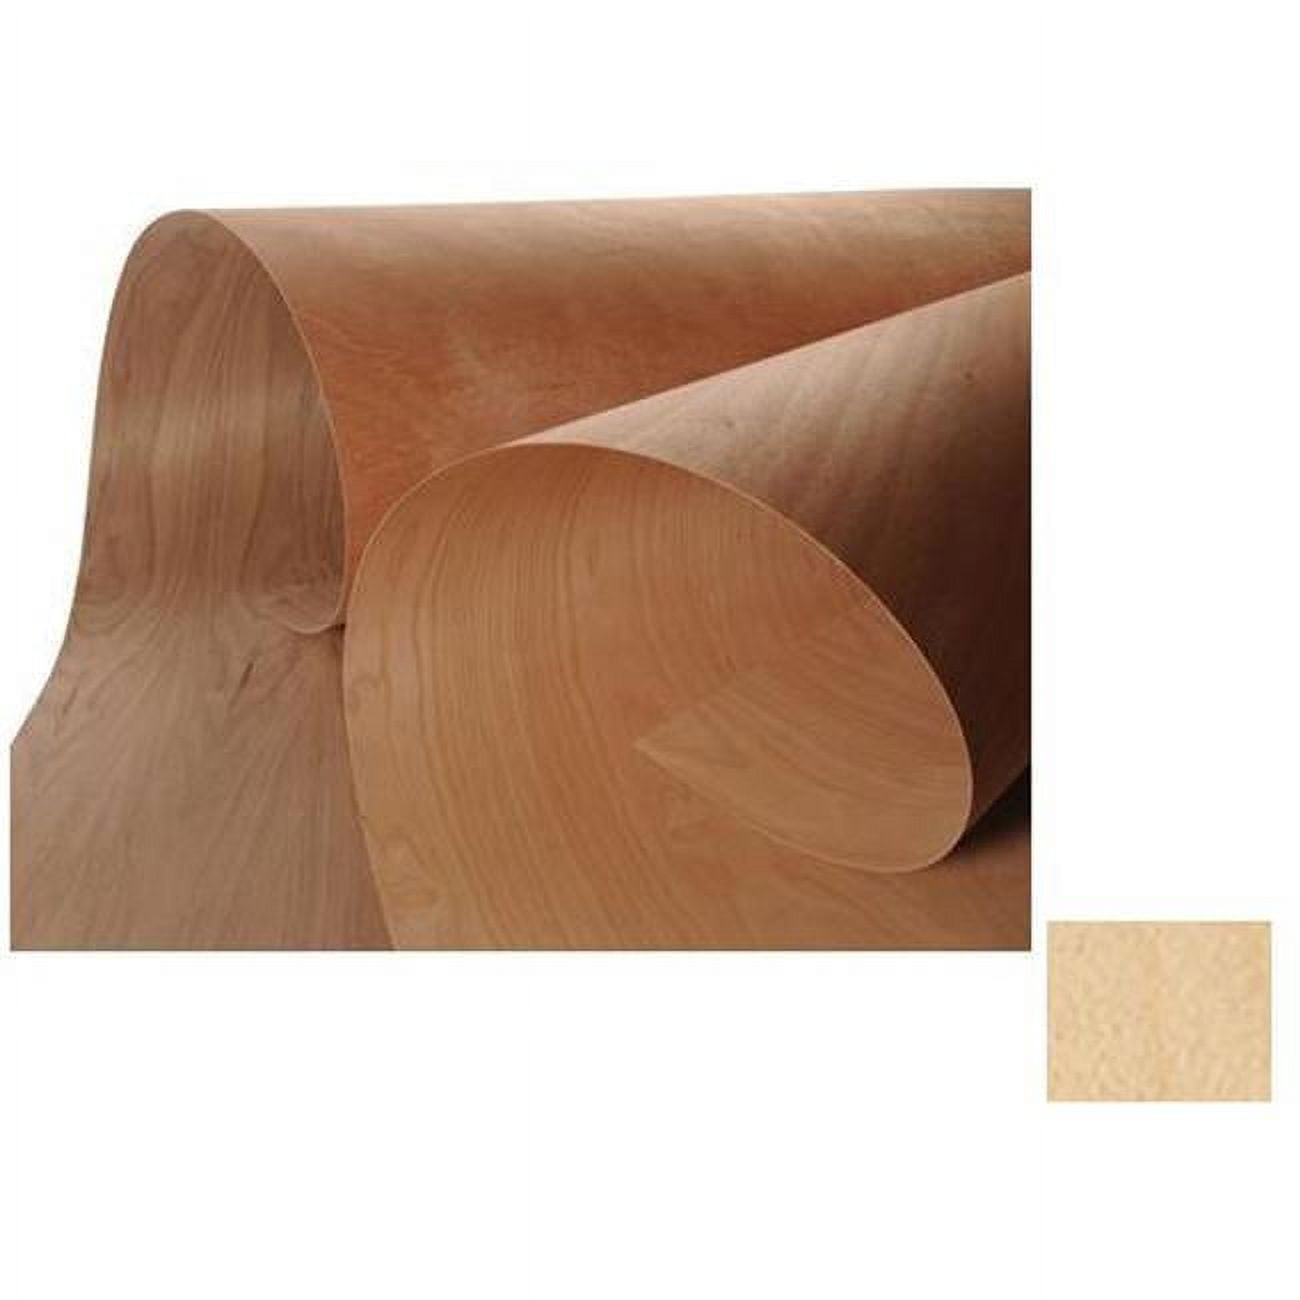 Sauers - Walnut Wood Veneer Sheet - 4' x 8' - Quartersawn - 10 Mil Paper  Backed